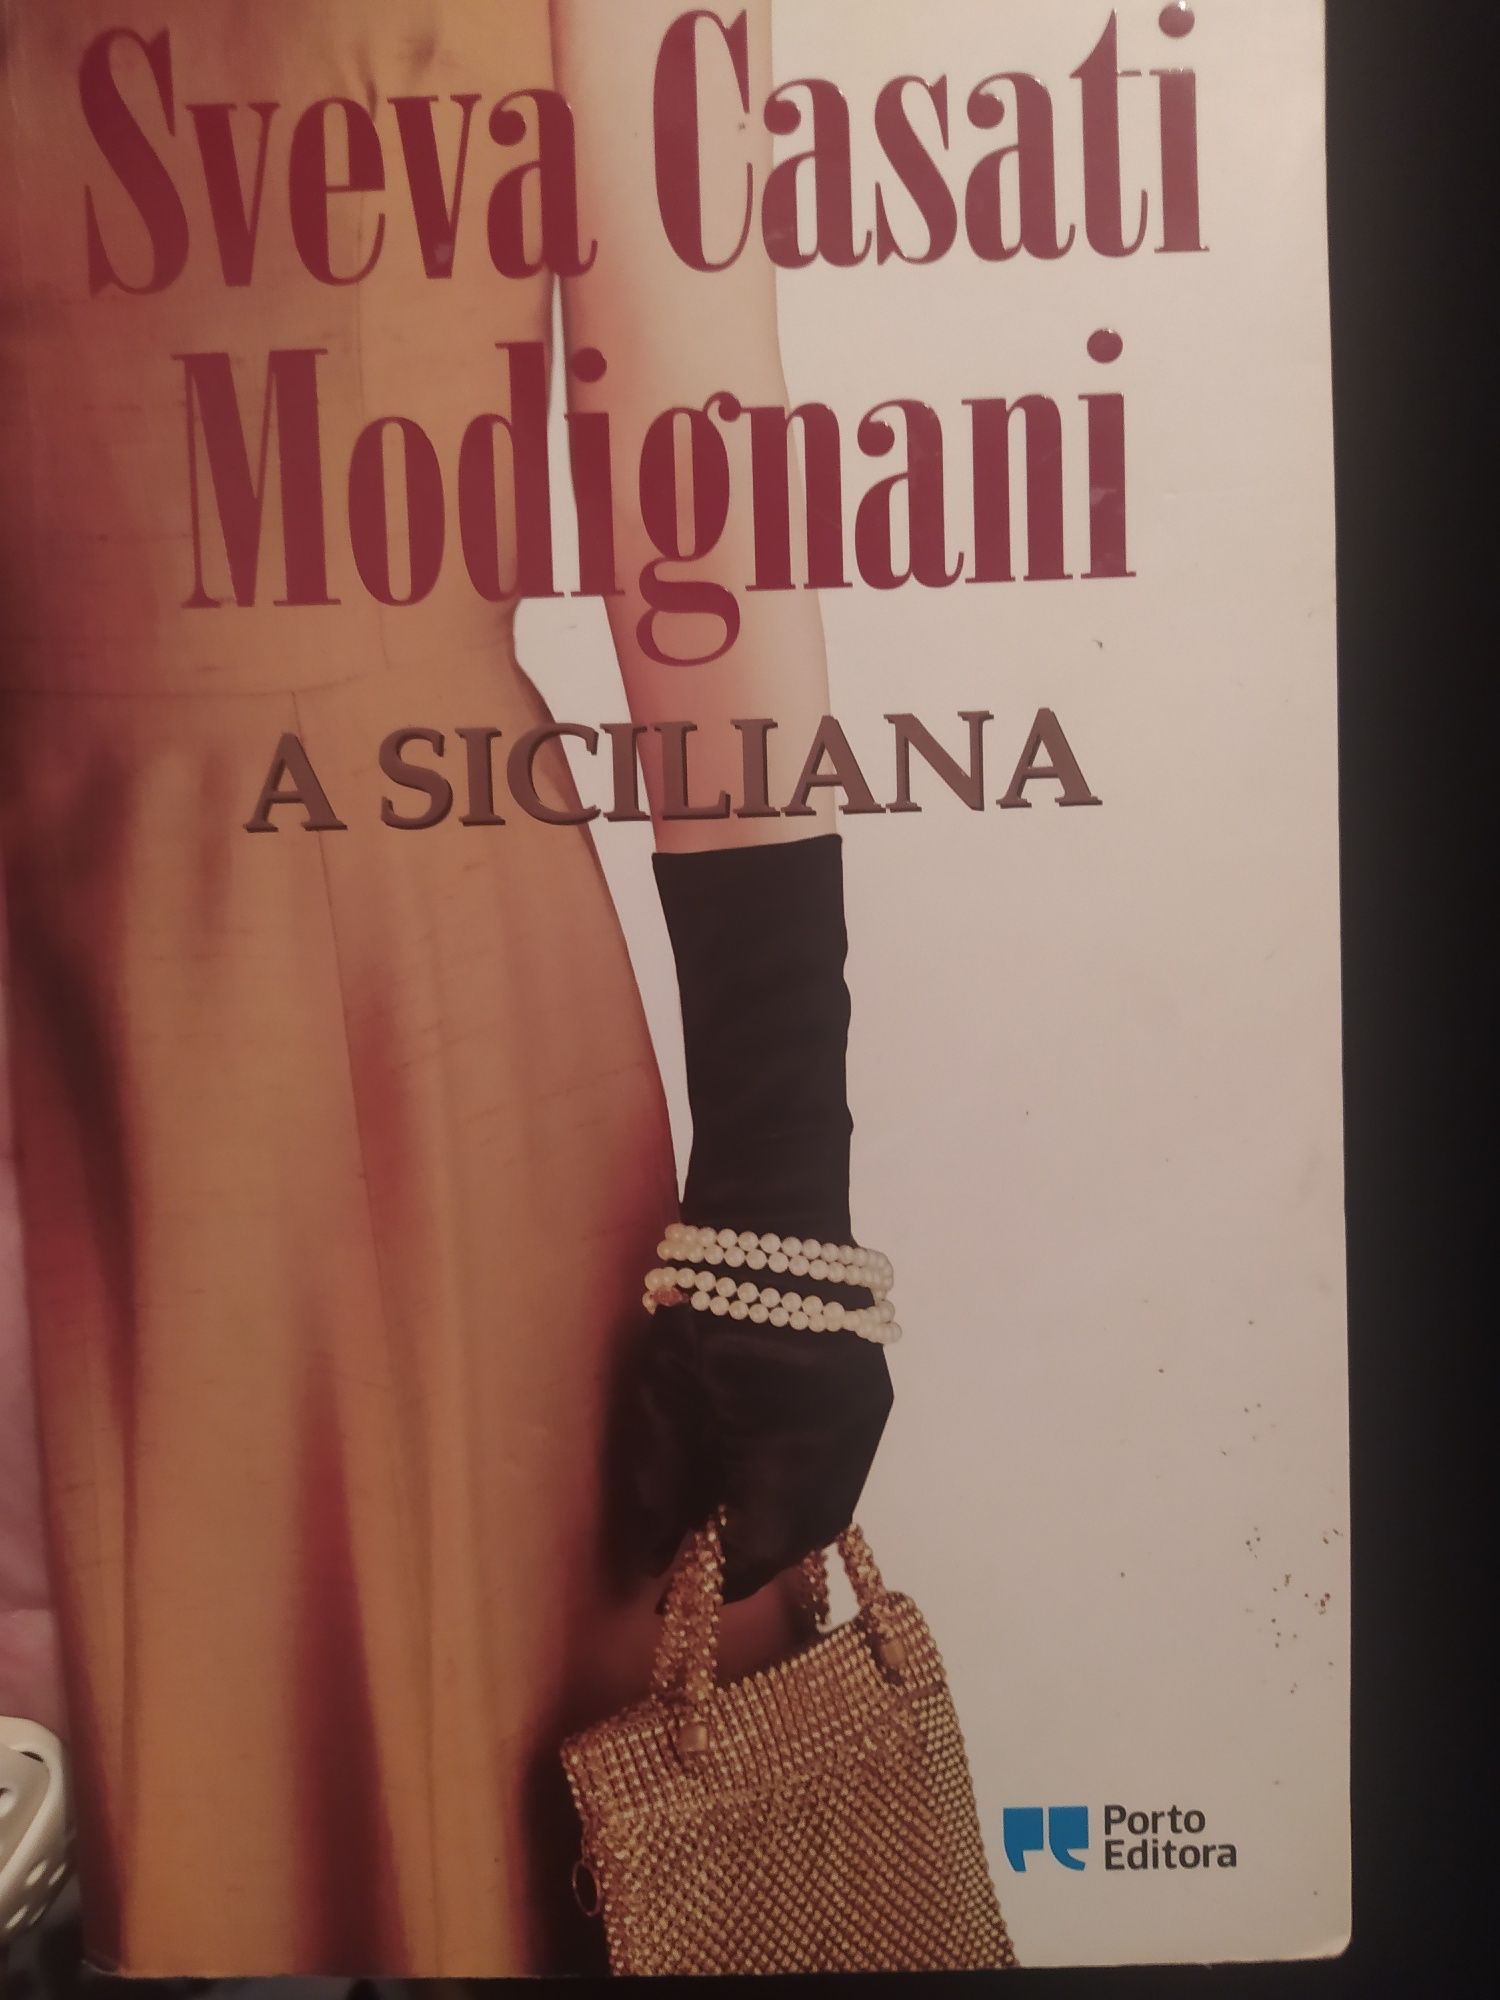 Livros de Sveva Casati Modignani